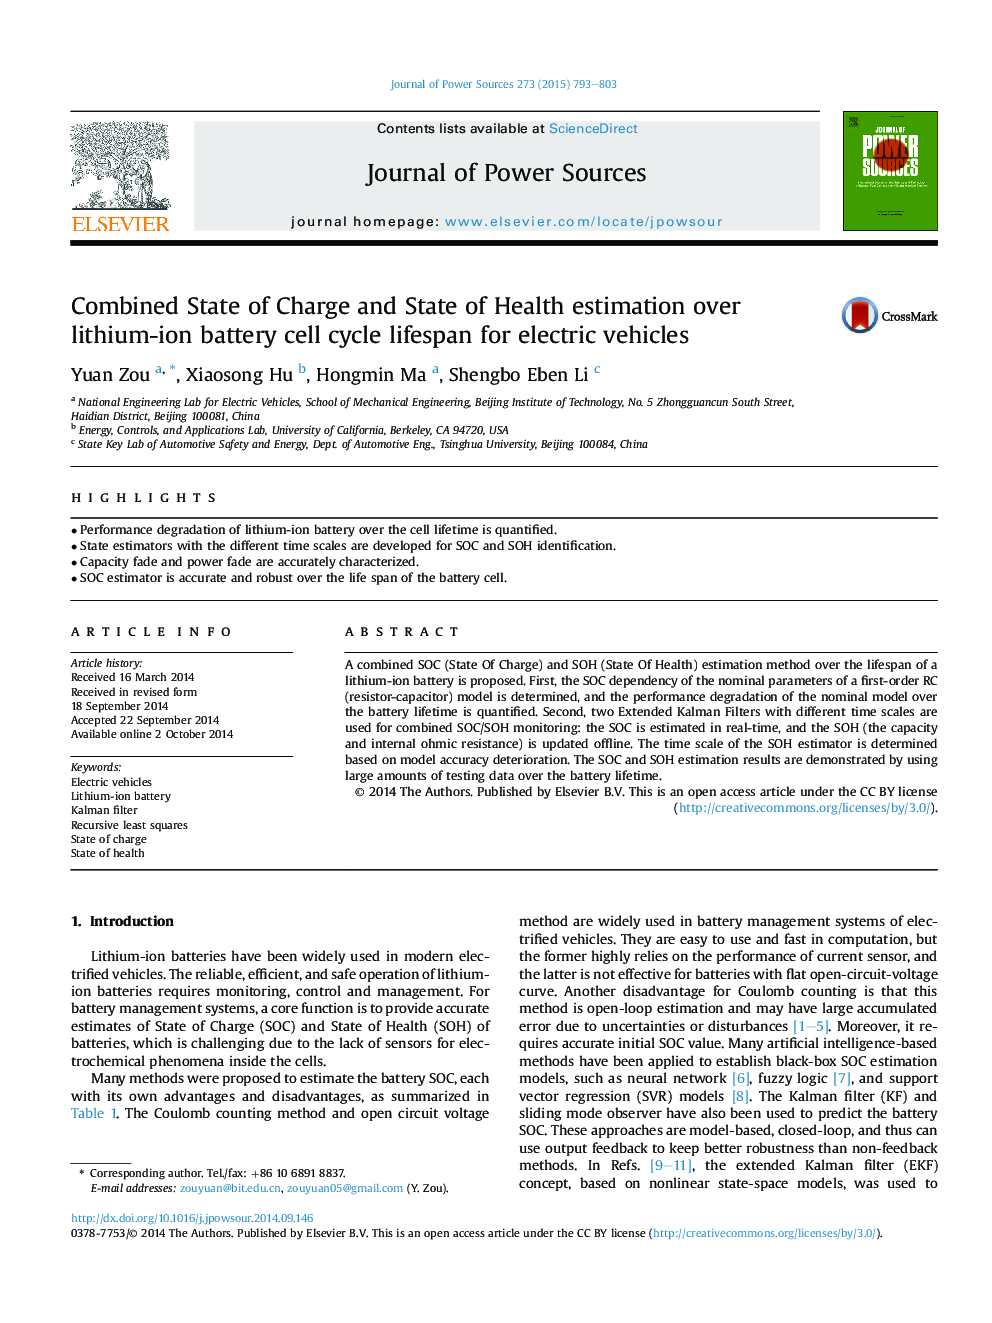 تخمین شارژ باتری و وضعیت بهداشتی بر روی طول عمر چرخه باتری لیتیوم یون برای وسایل نقلیه الکتریکی 